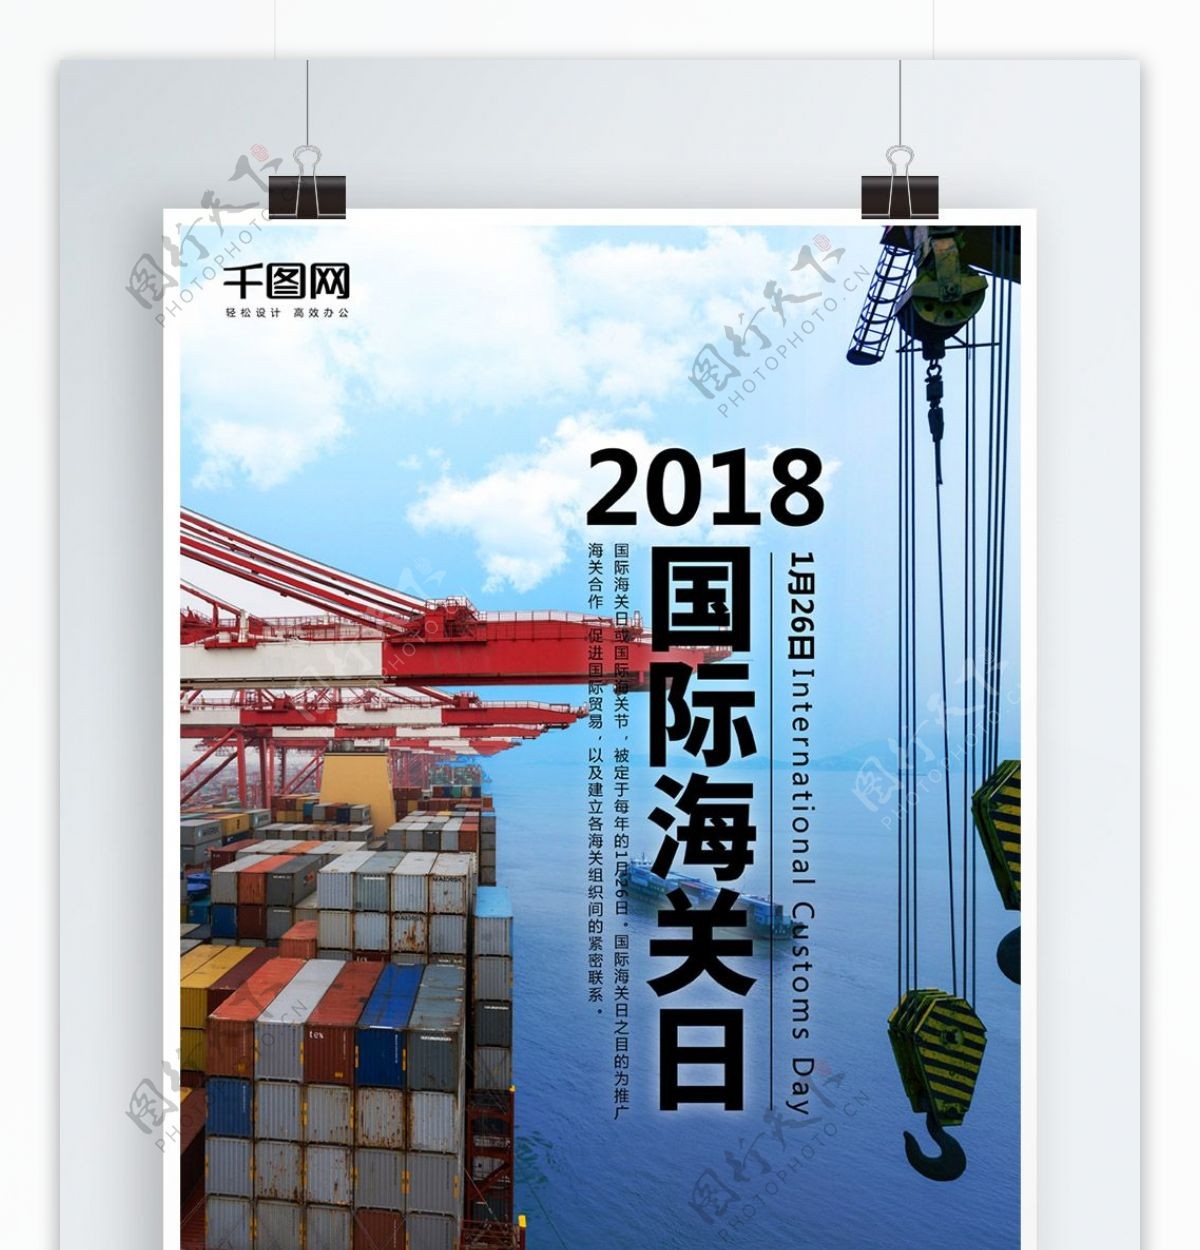 国际海关日码头集装箱海报设计